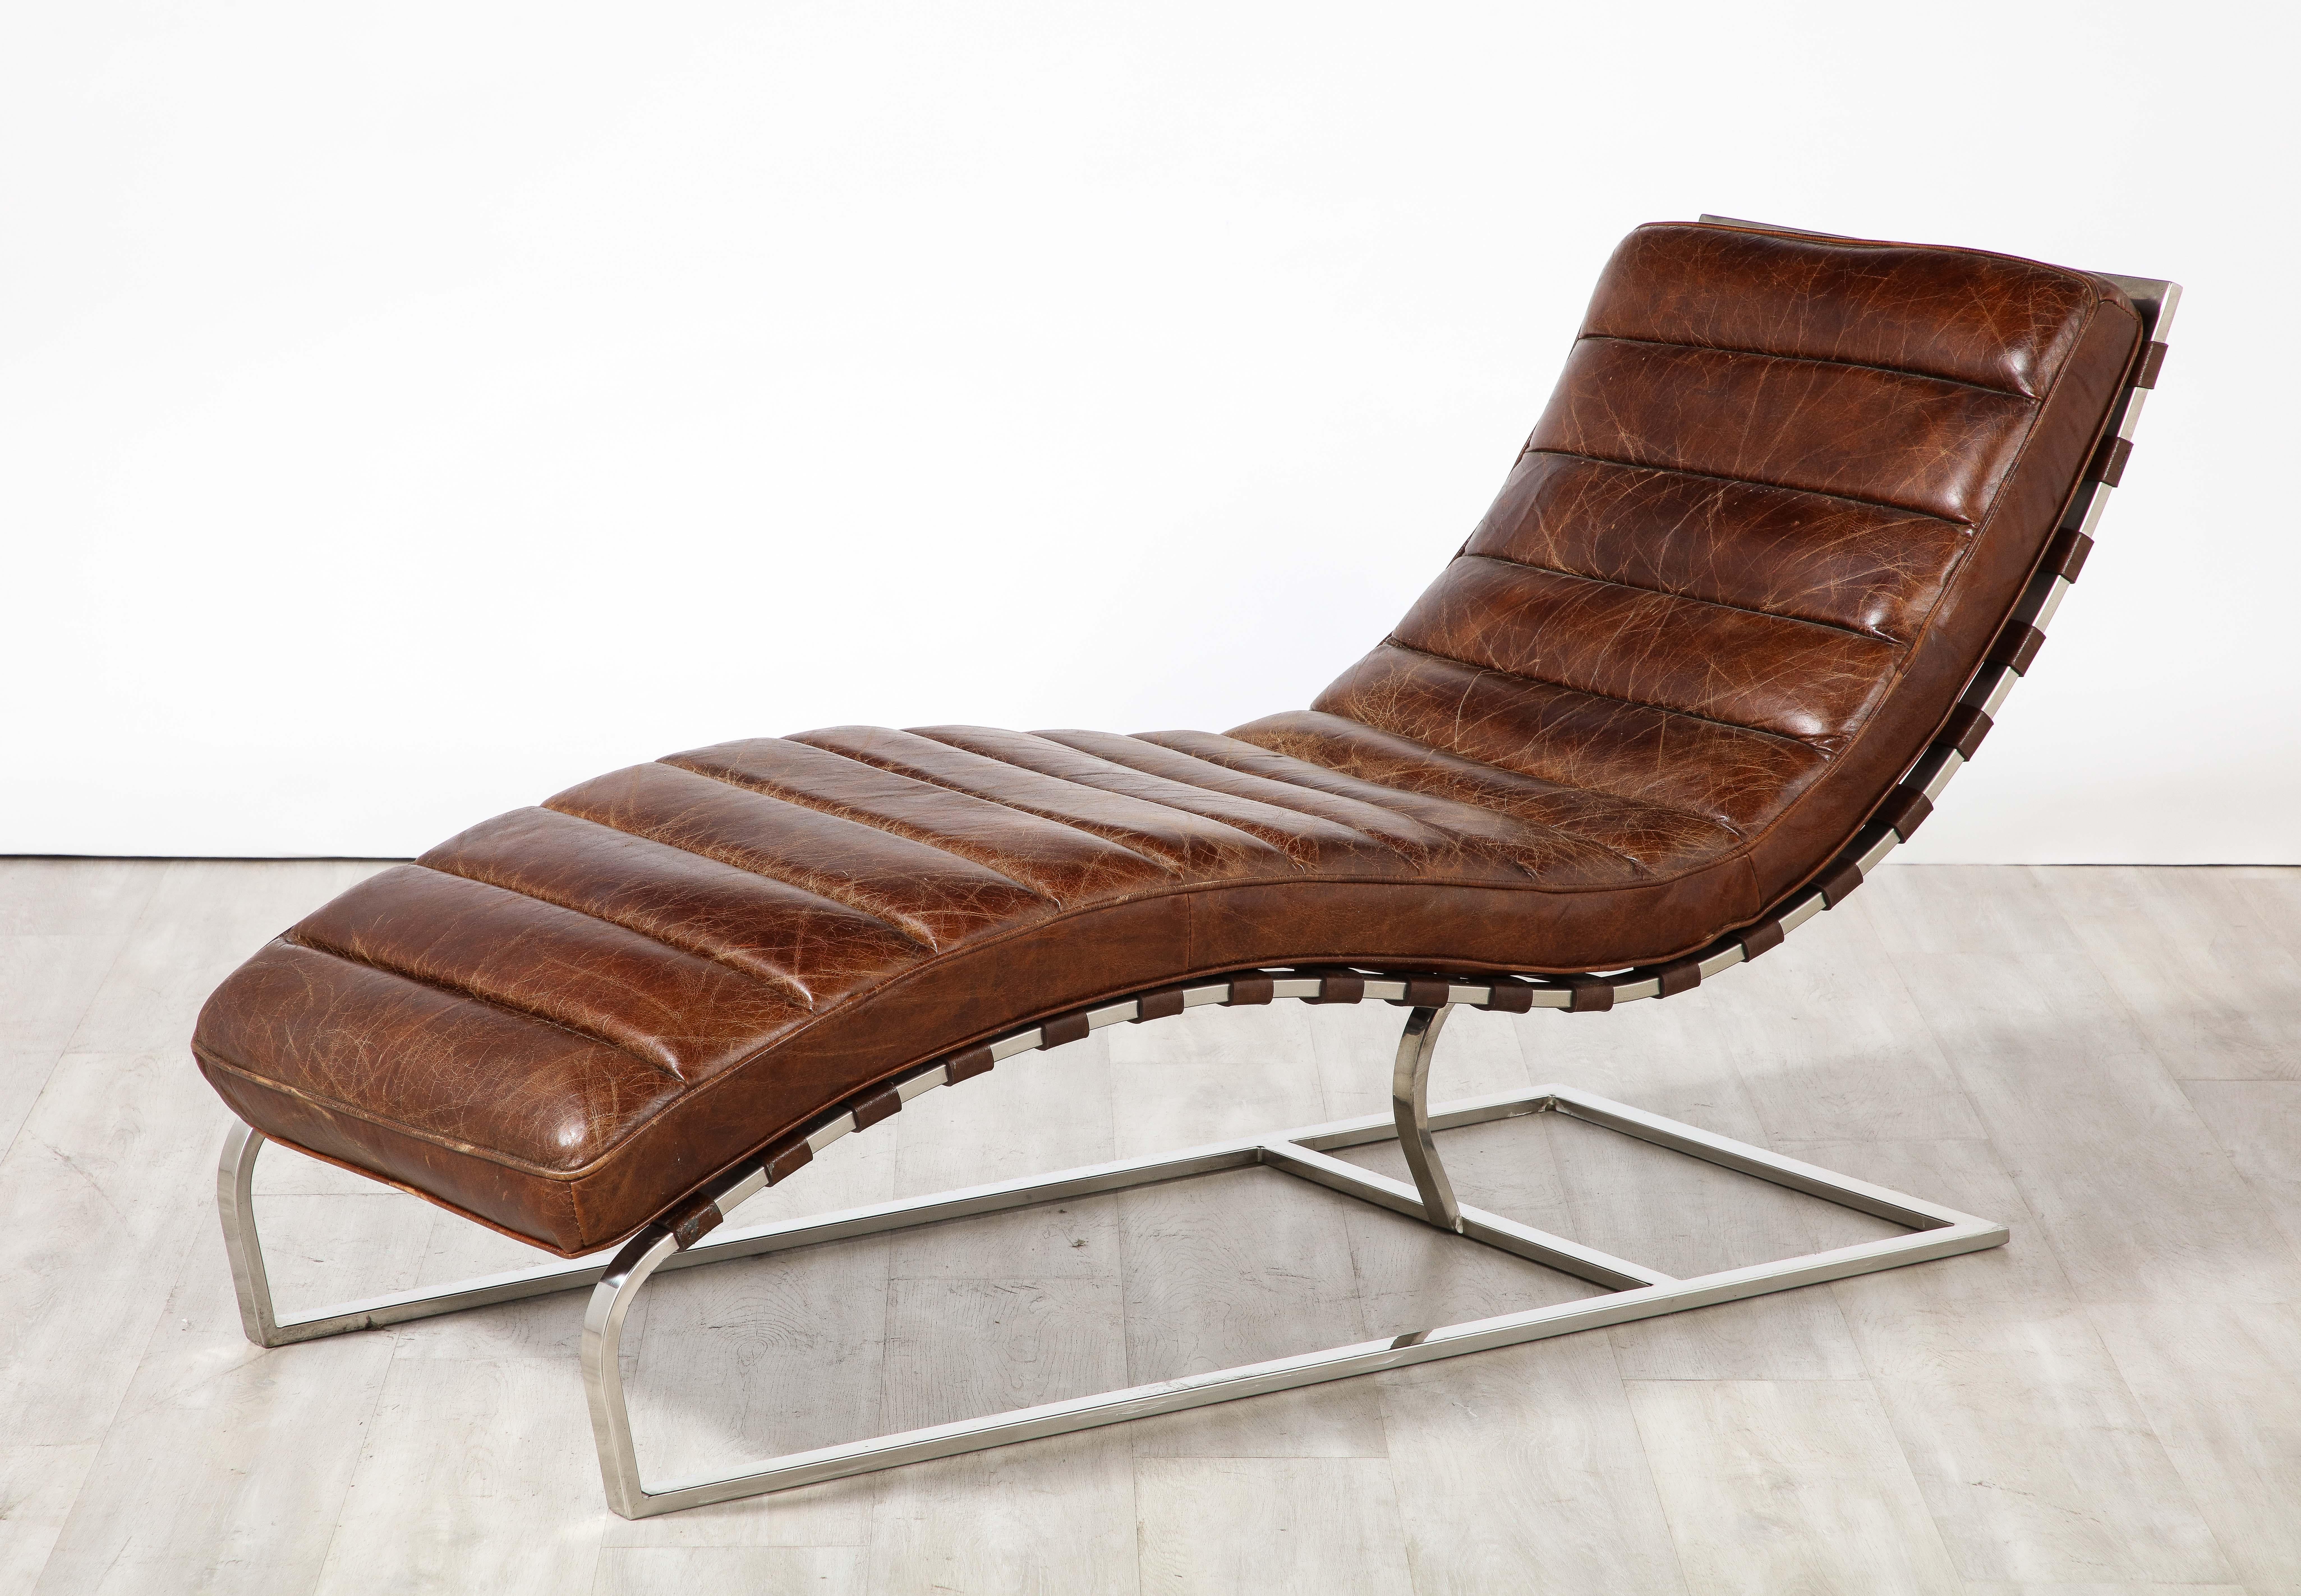 Une belle chaise longue en cuir italien cannelé brun chocolat des années 1970. Le cadre incliné, aux contours ondulés, est en harmonie avec le support chromé angulaire. Le cuir brun chocolat, chaud et riche, contraste magnifiquement avec le métal